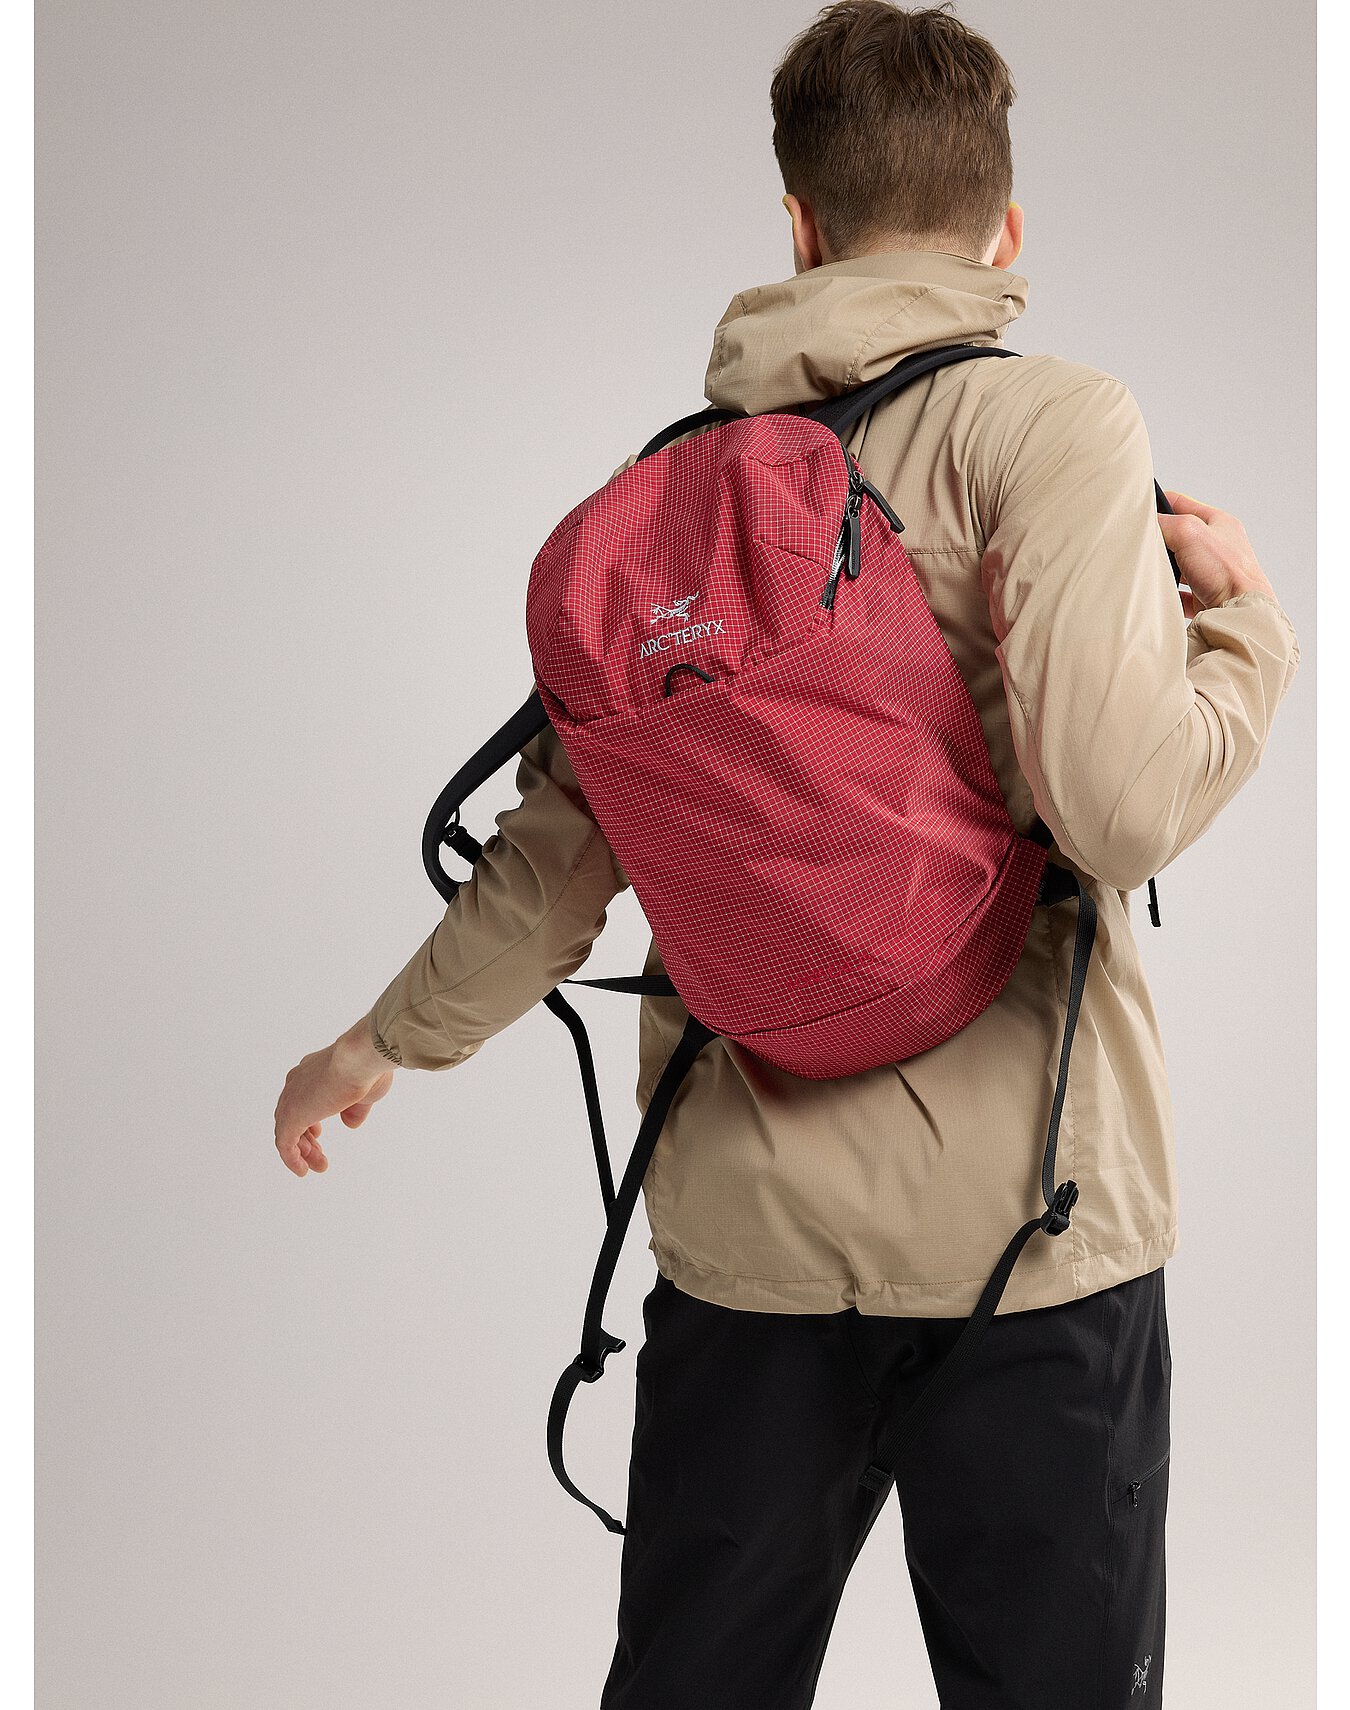 Konseal 15 Backpack | Arc'teryx